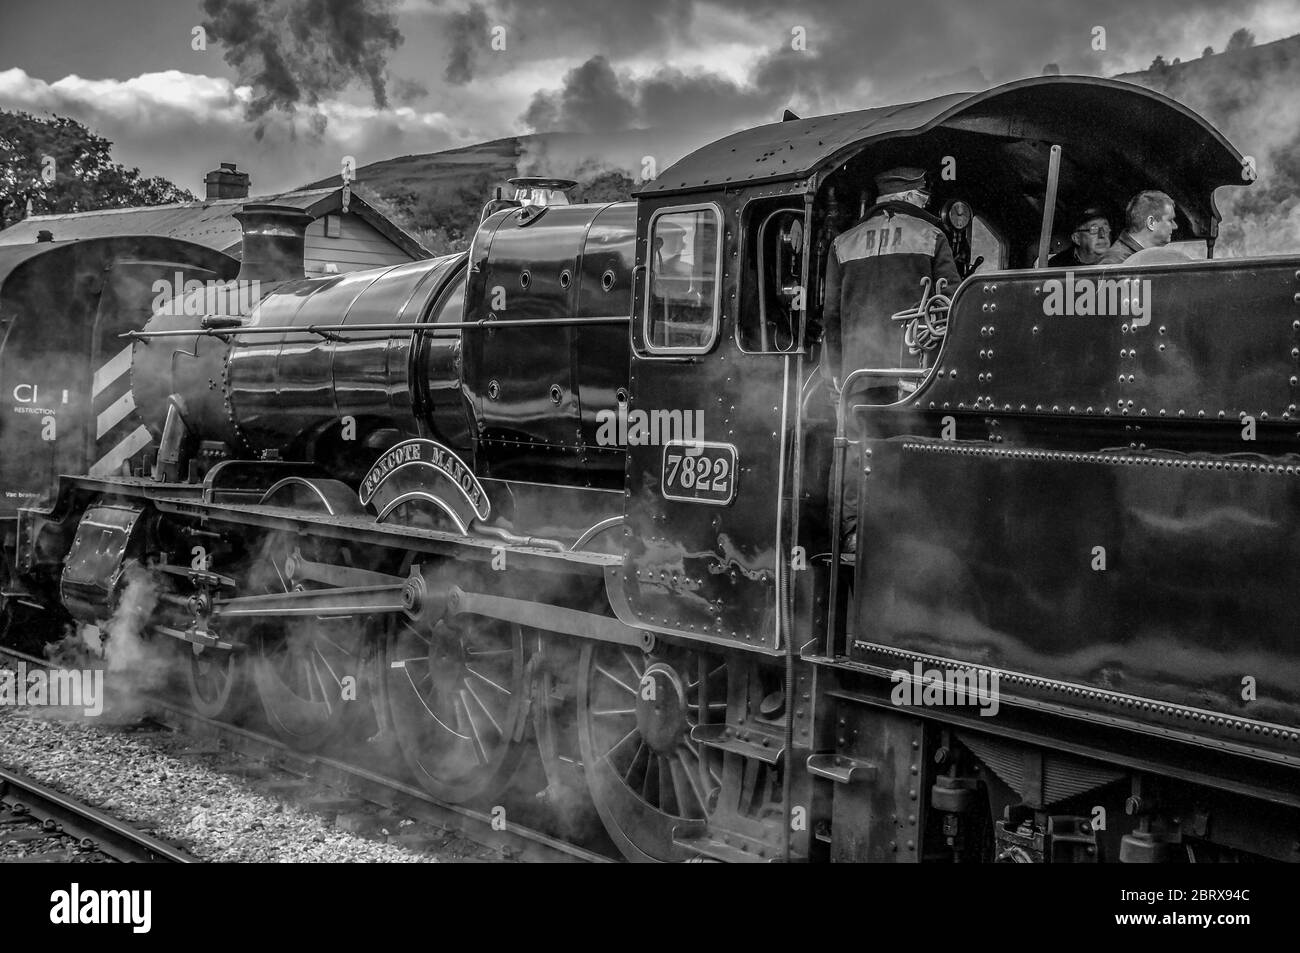 Steam train. Locomotive Foxcote Manor 7822 at Glyndyfrdwy station. Llangollen railway. steam train Stock Photo